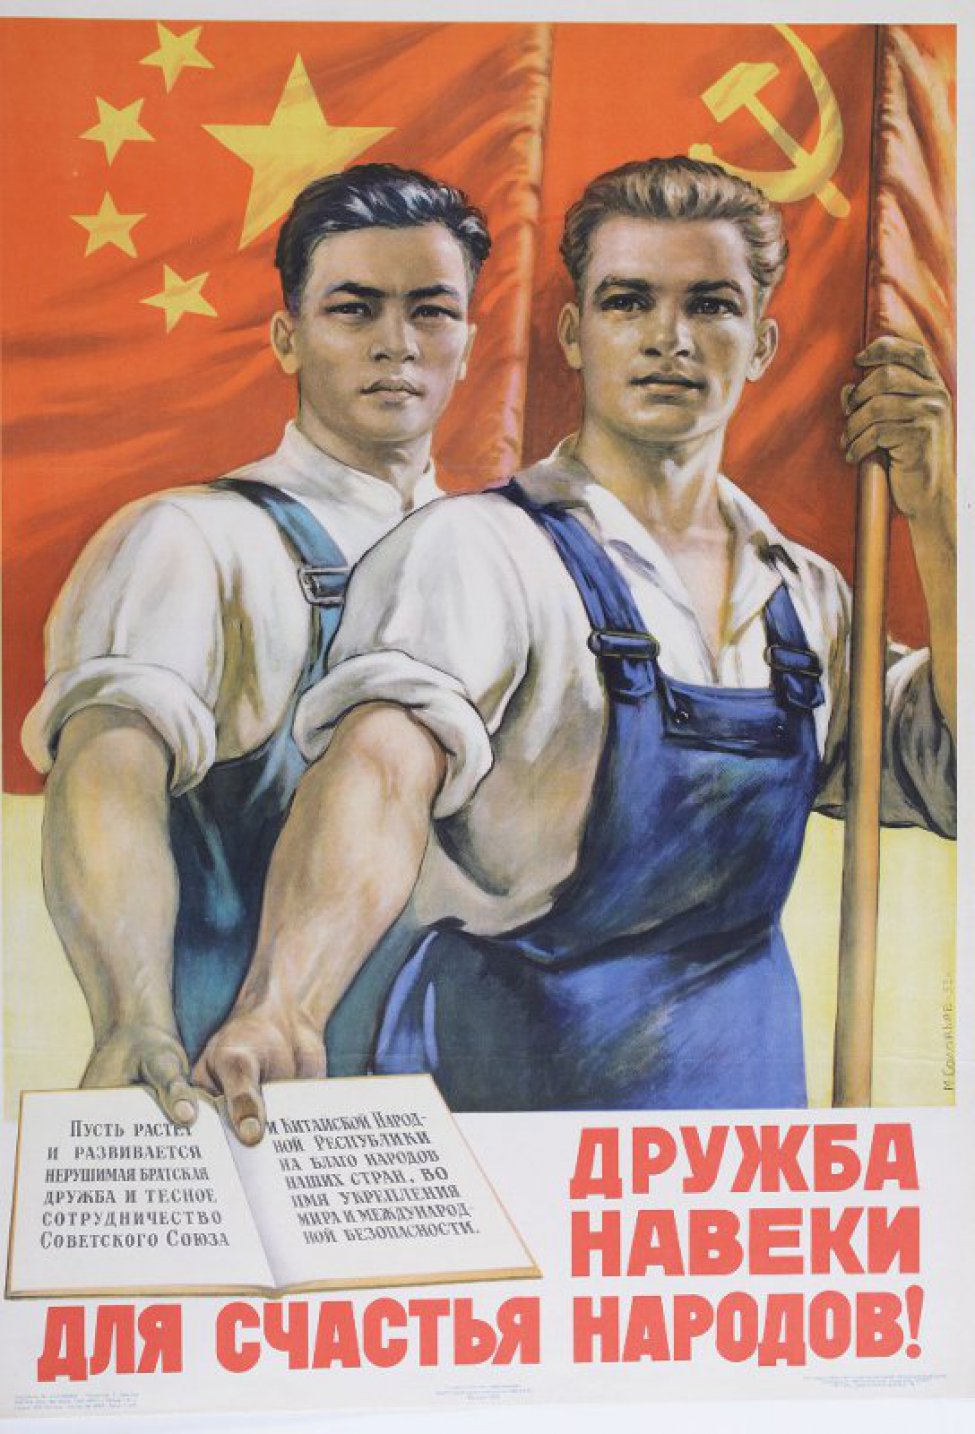 Изображены двое: русский и китаец со знамёнами в руках, в правых руках раскрытая книга со словами: "Пусть растёт и развивается нерушимая братская дружба...!"